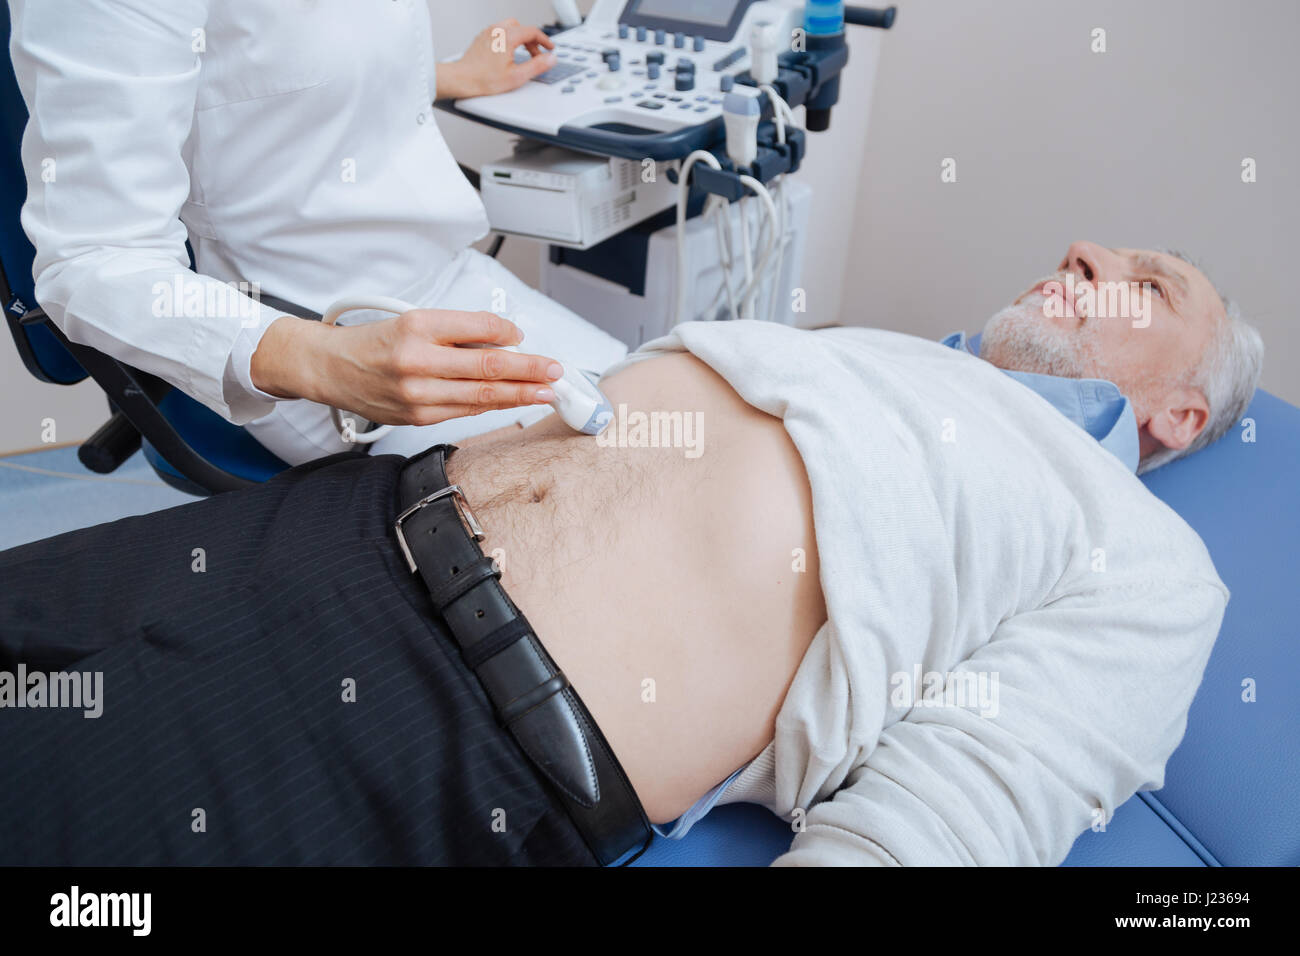 Medico qualificato fornire ultrasuoni monitoraggio addome durante il lavoro Foto Stock